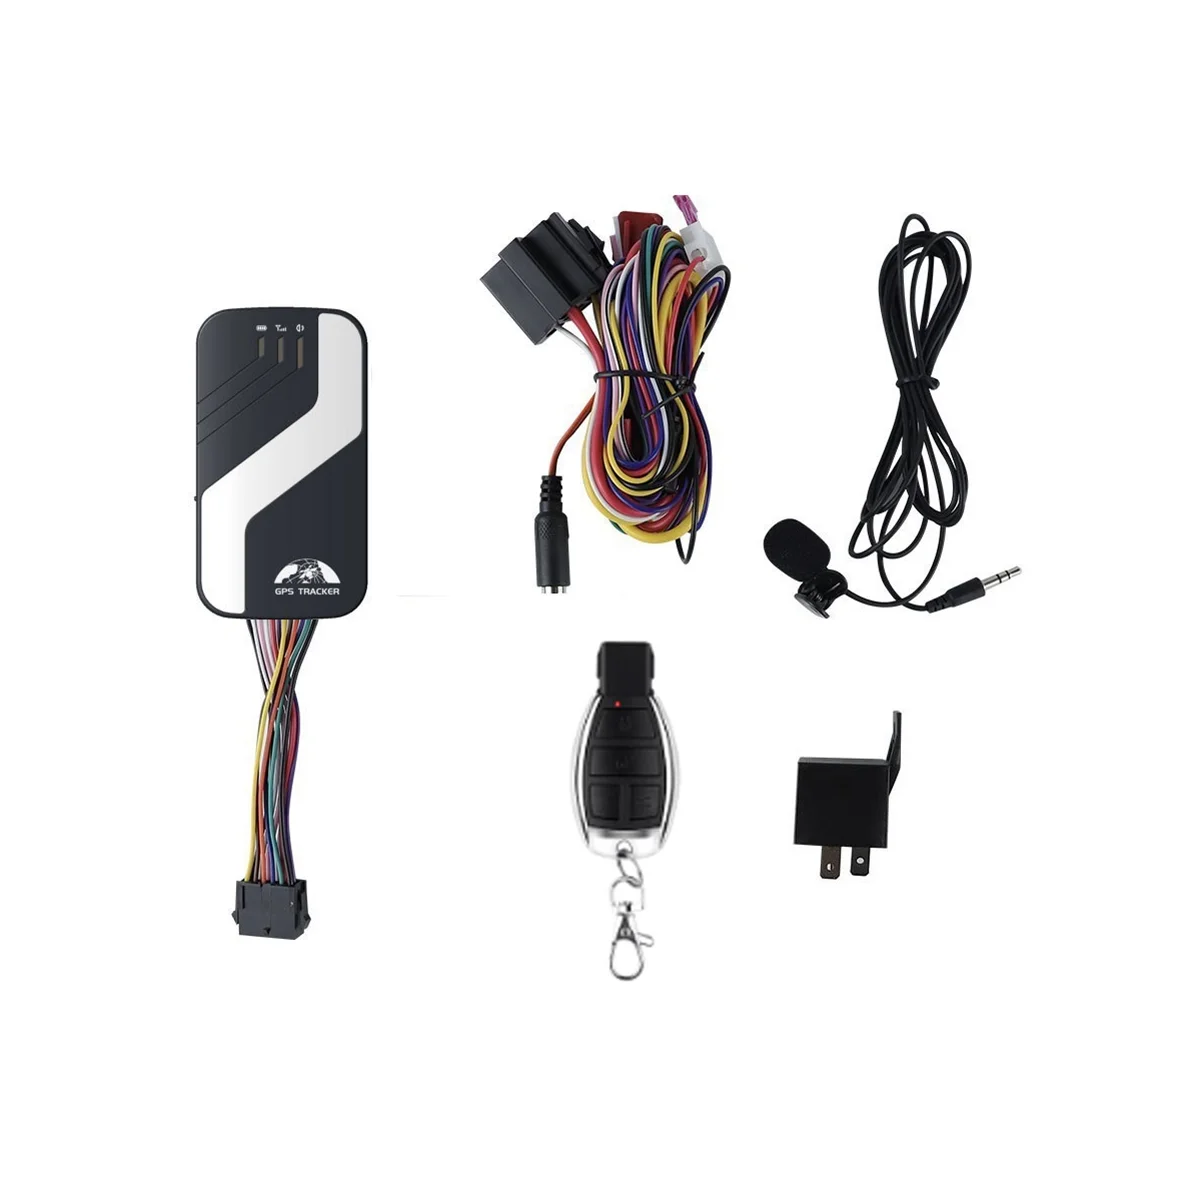 Rastreador GPS para coche 4G LTE, dispositivo de seguimiento de vehículos, Monitor de voz, corte de combustible, alarma GPS para coche ACC, alarma de apertura de puerta (GPS403B)